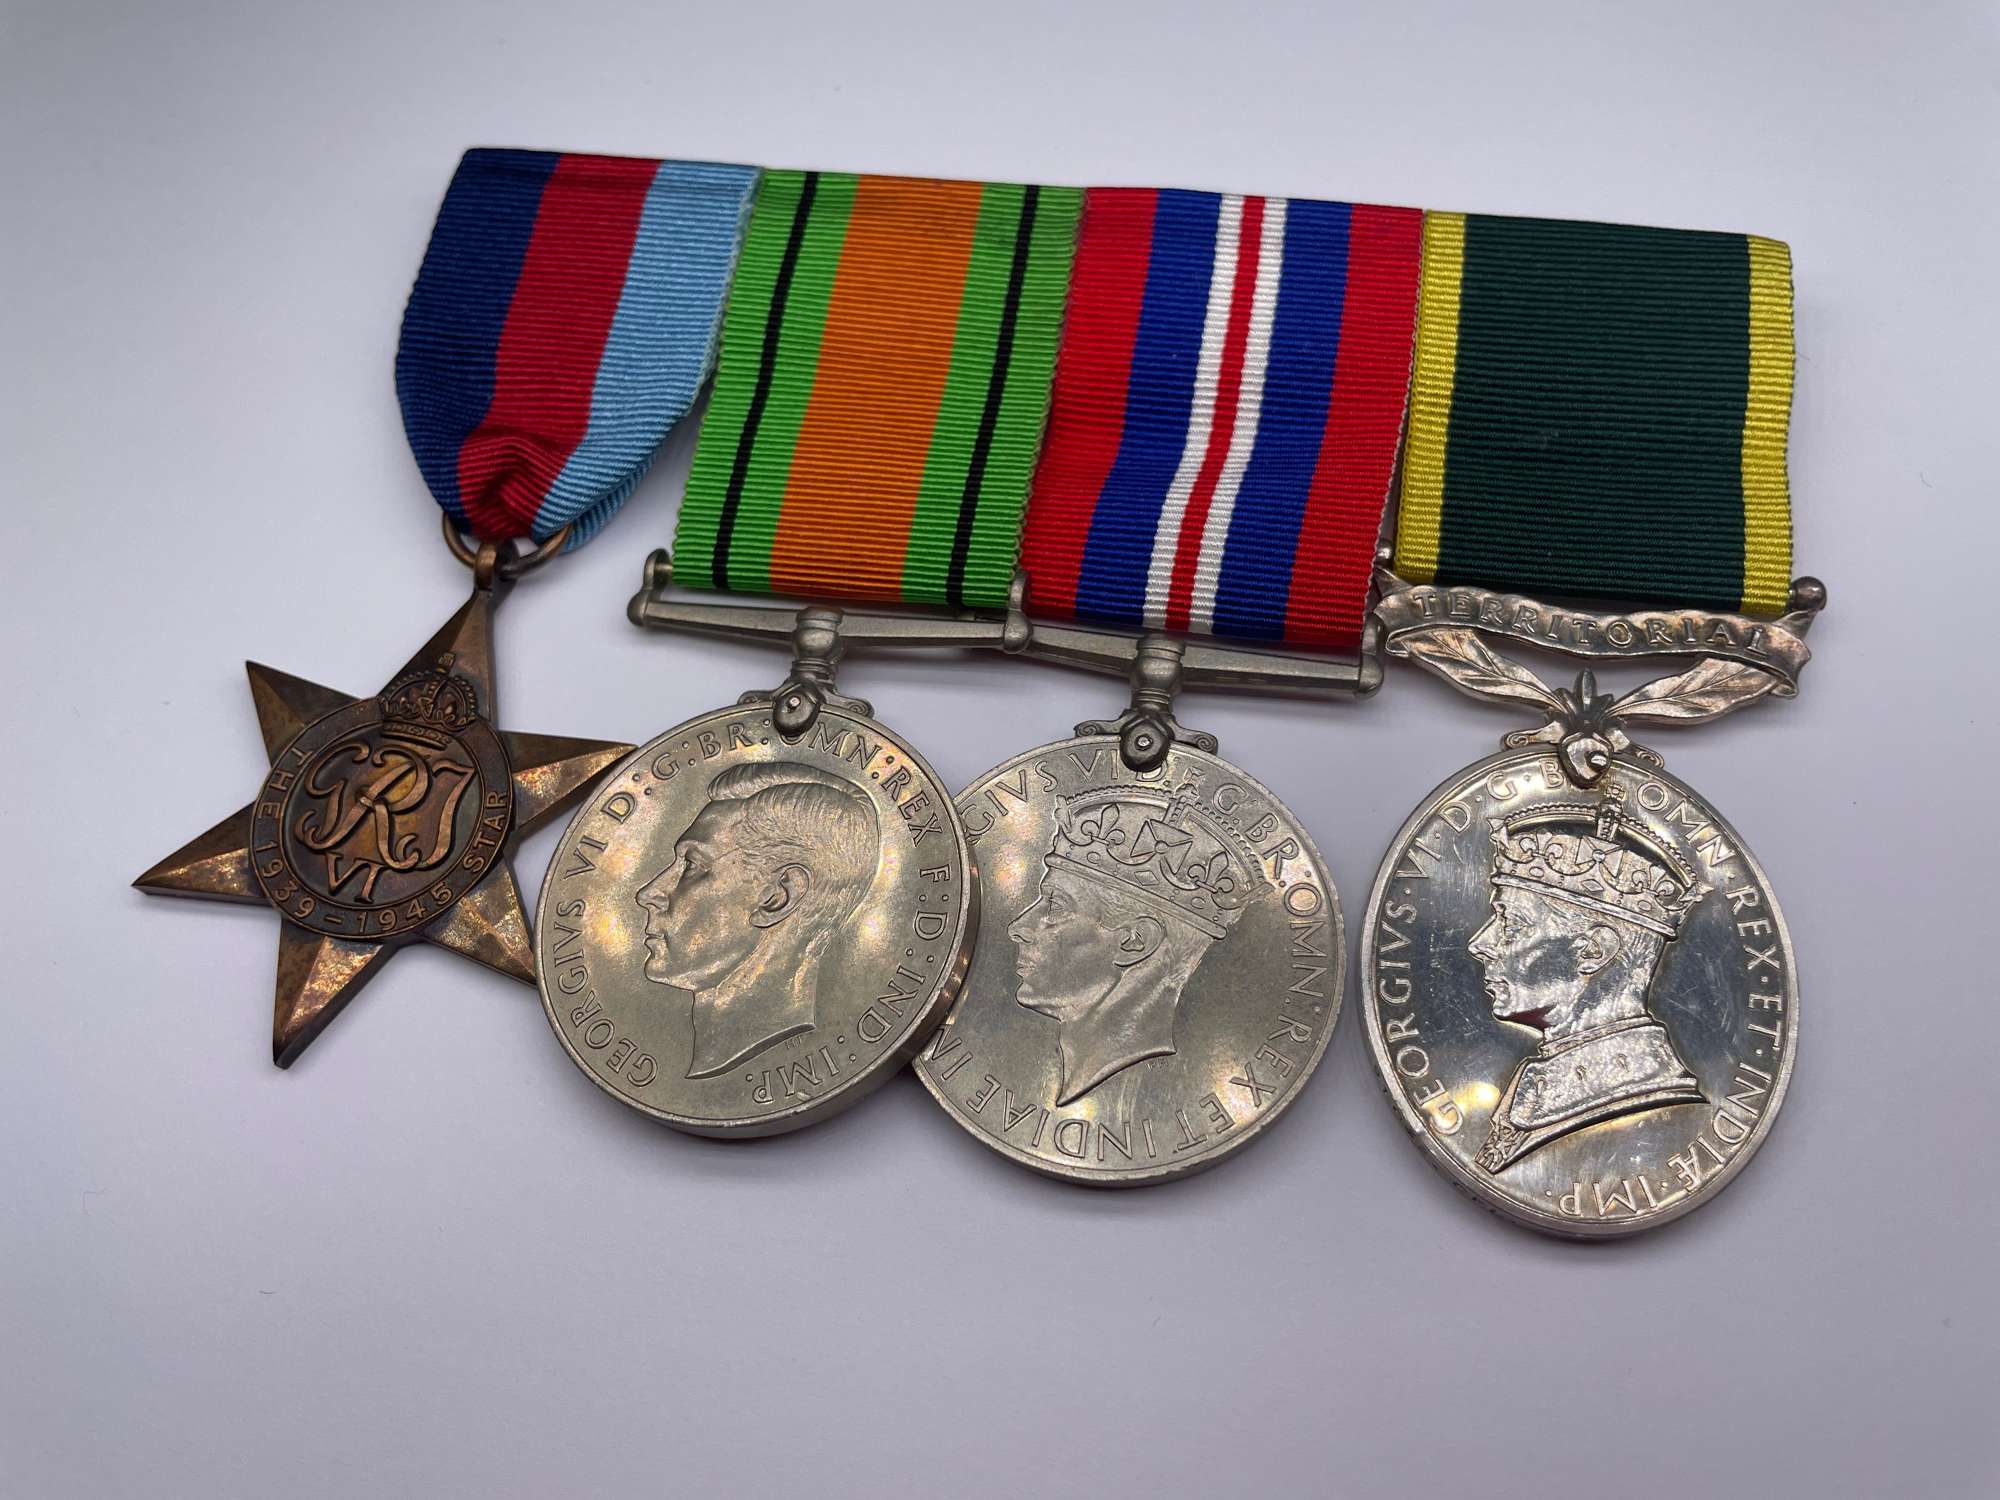 Original World War Two Medal Grouping, Cpl. Powell, R.E.M.E.